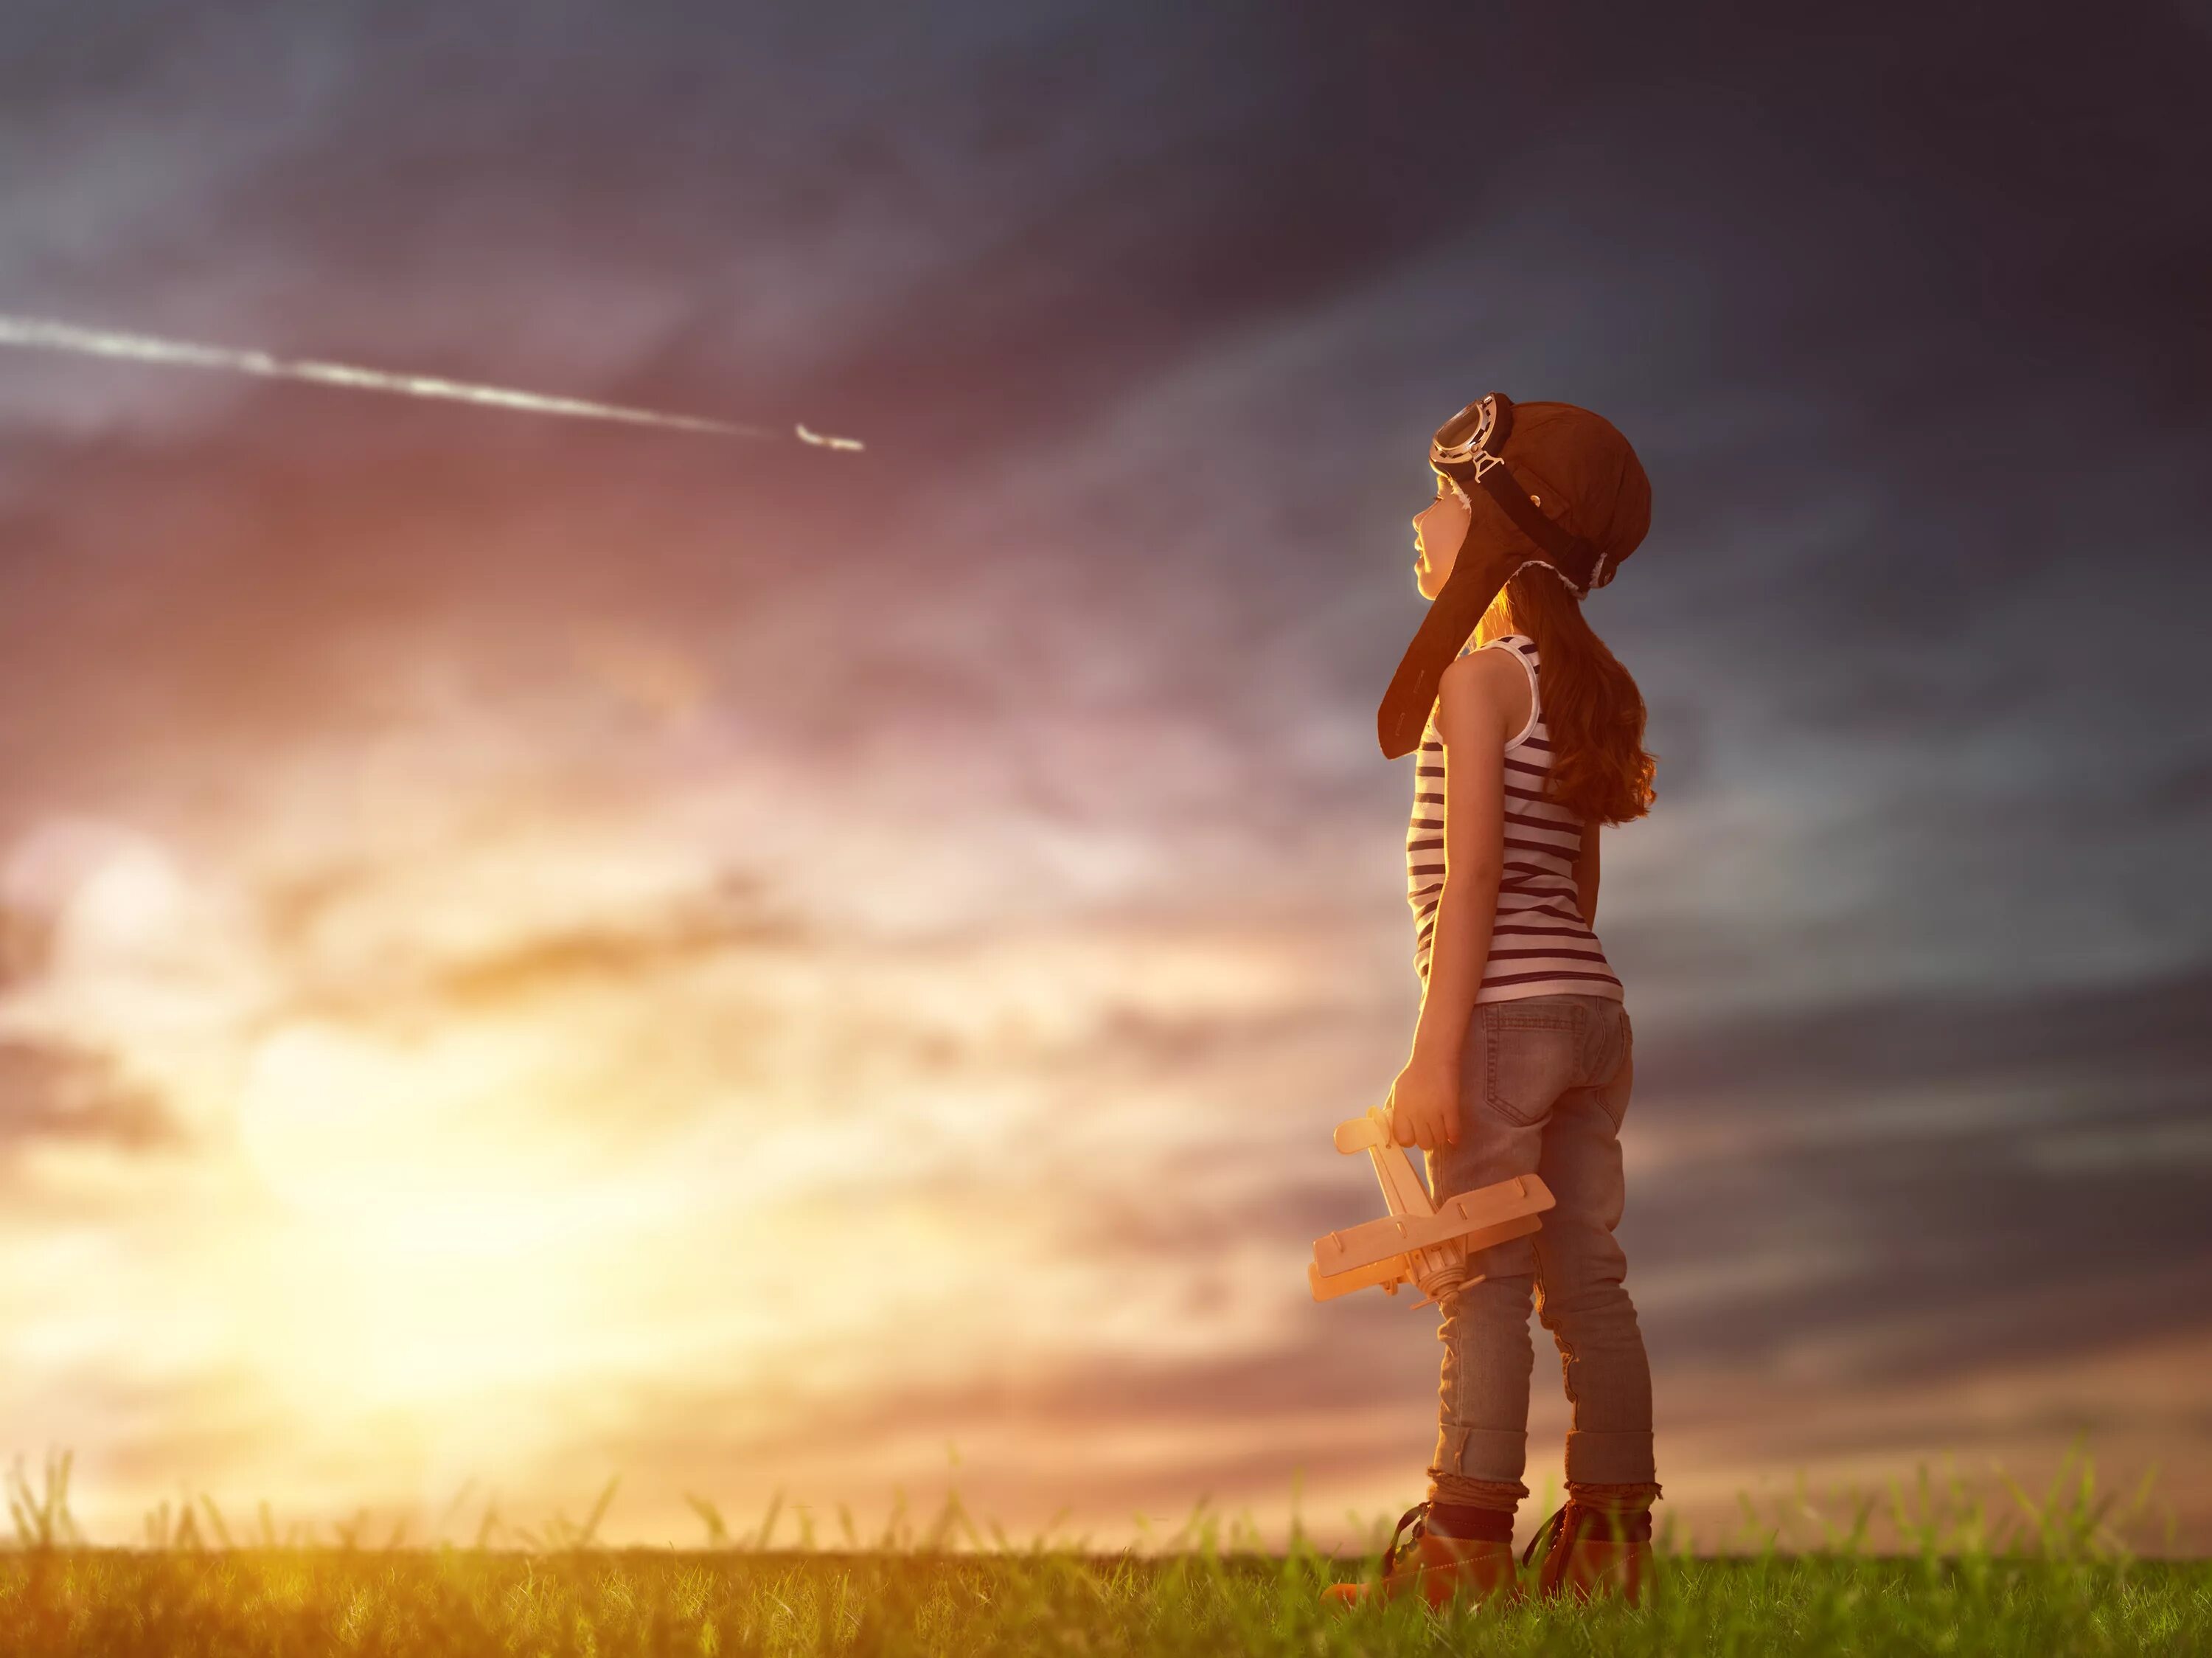 Жизнь и мечты 5. Фильтр сепия. Ребенок смотрит в небо. Сепия в фотошопе.